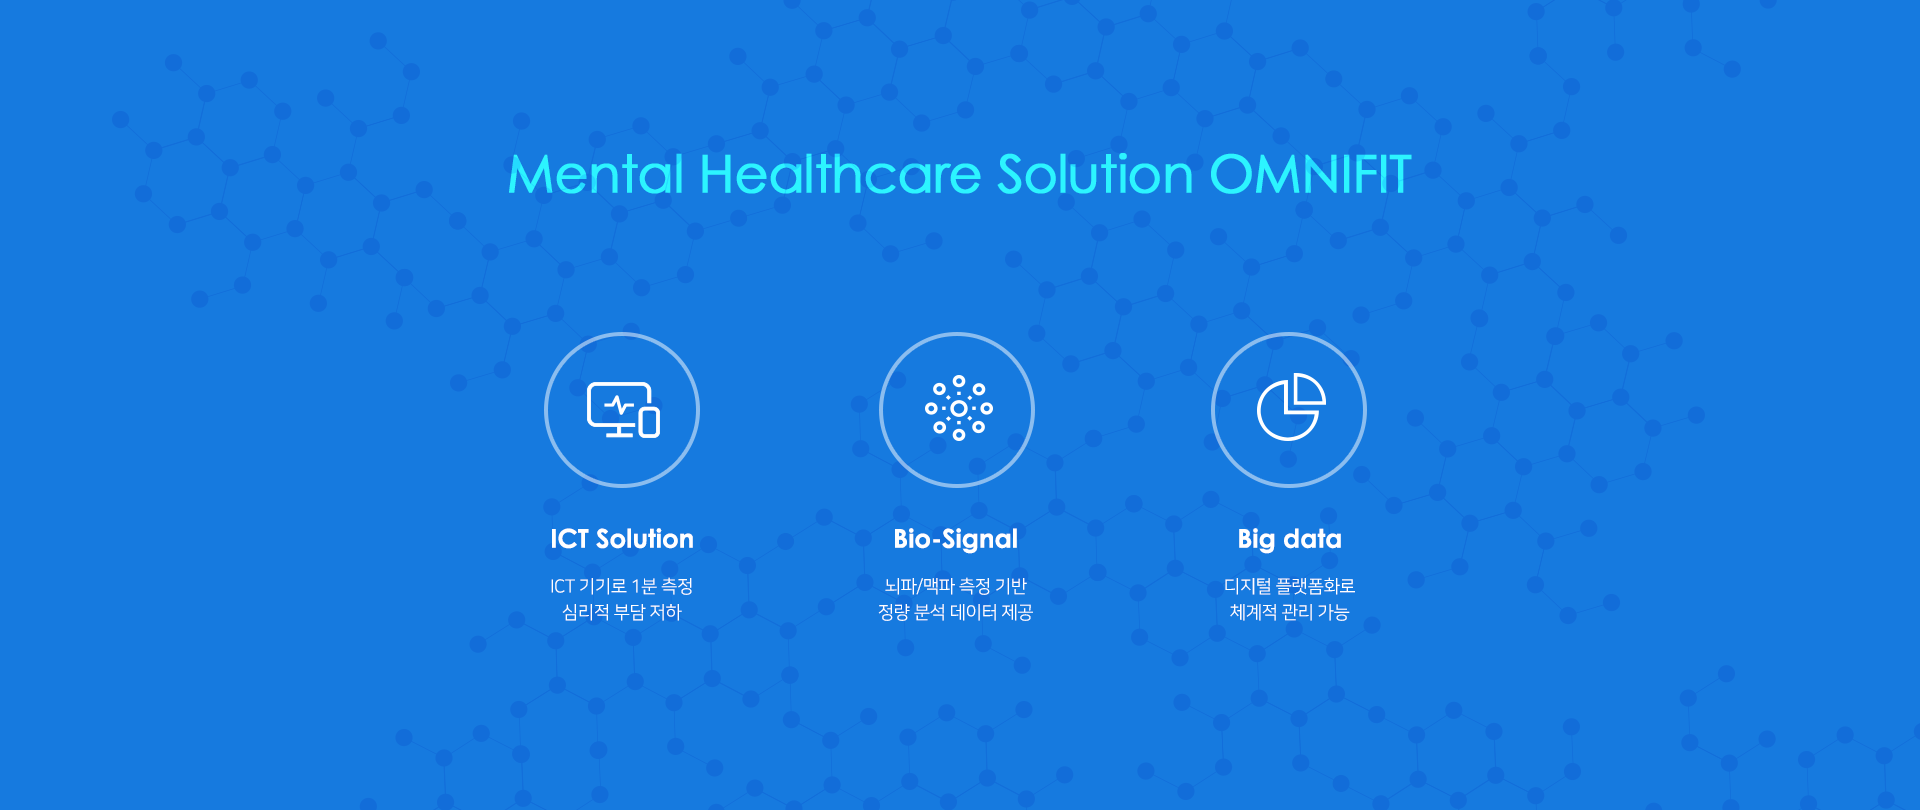 Mental Healthcare Solution OMnifit